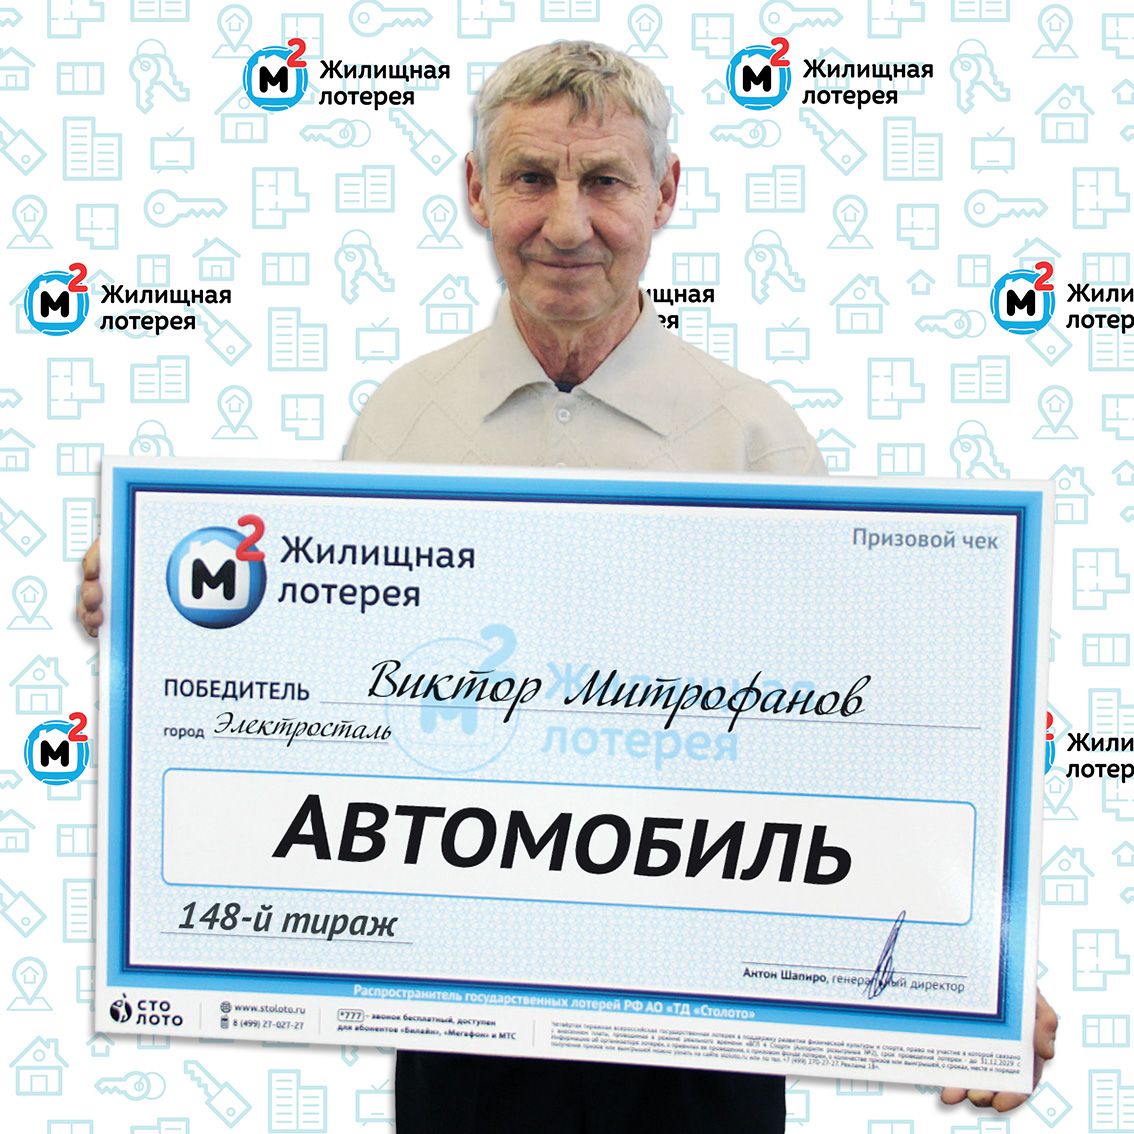 Виктор Михайлович Митрофанов